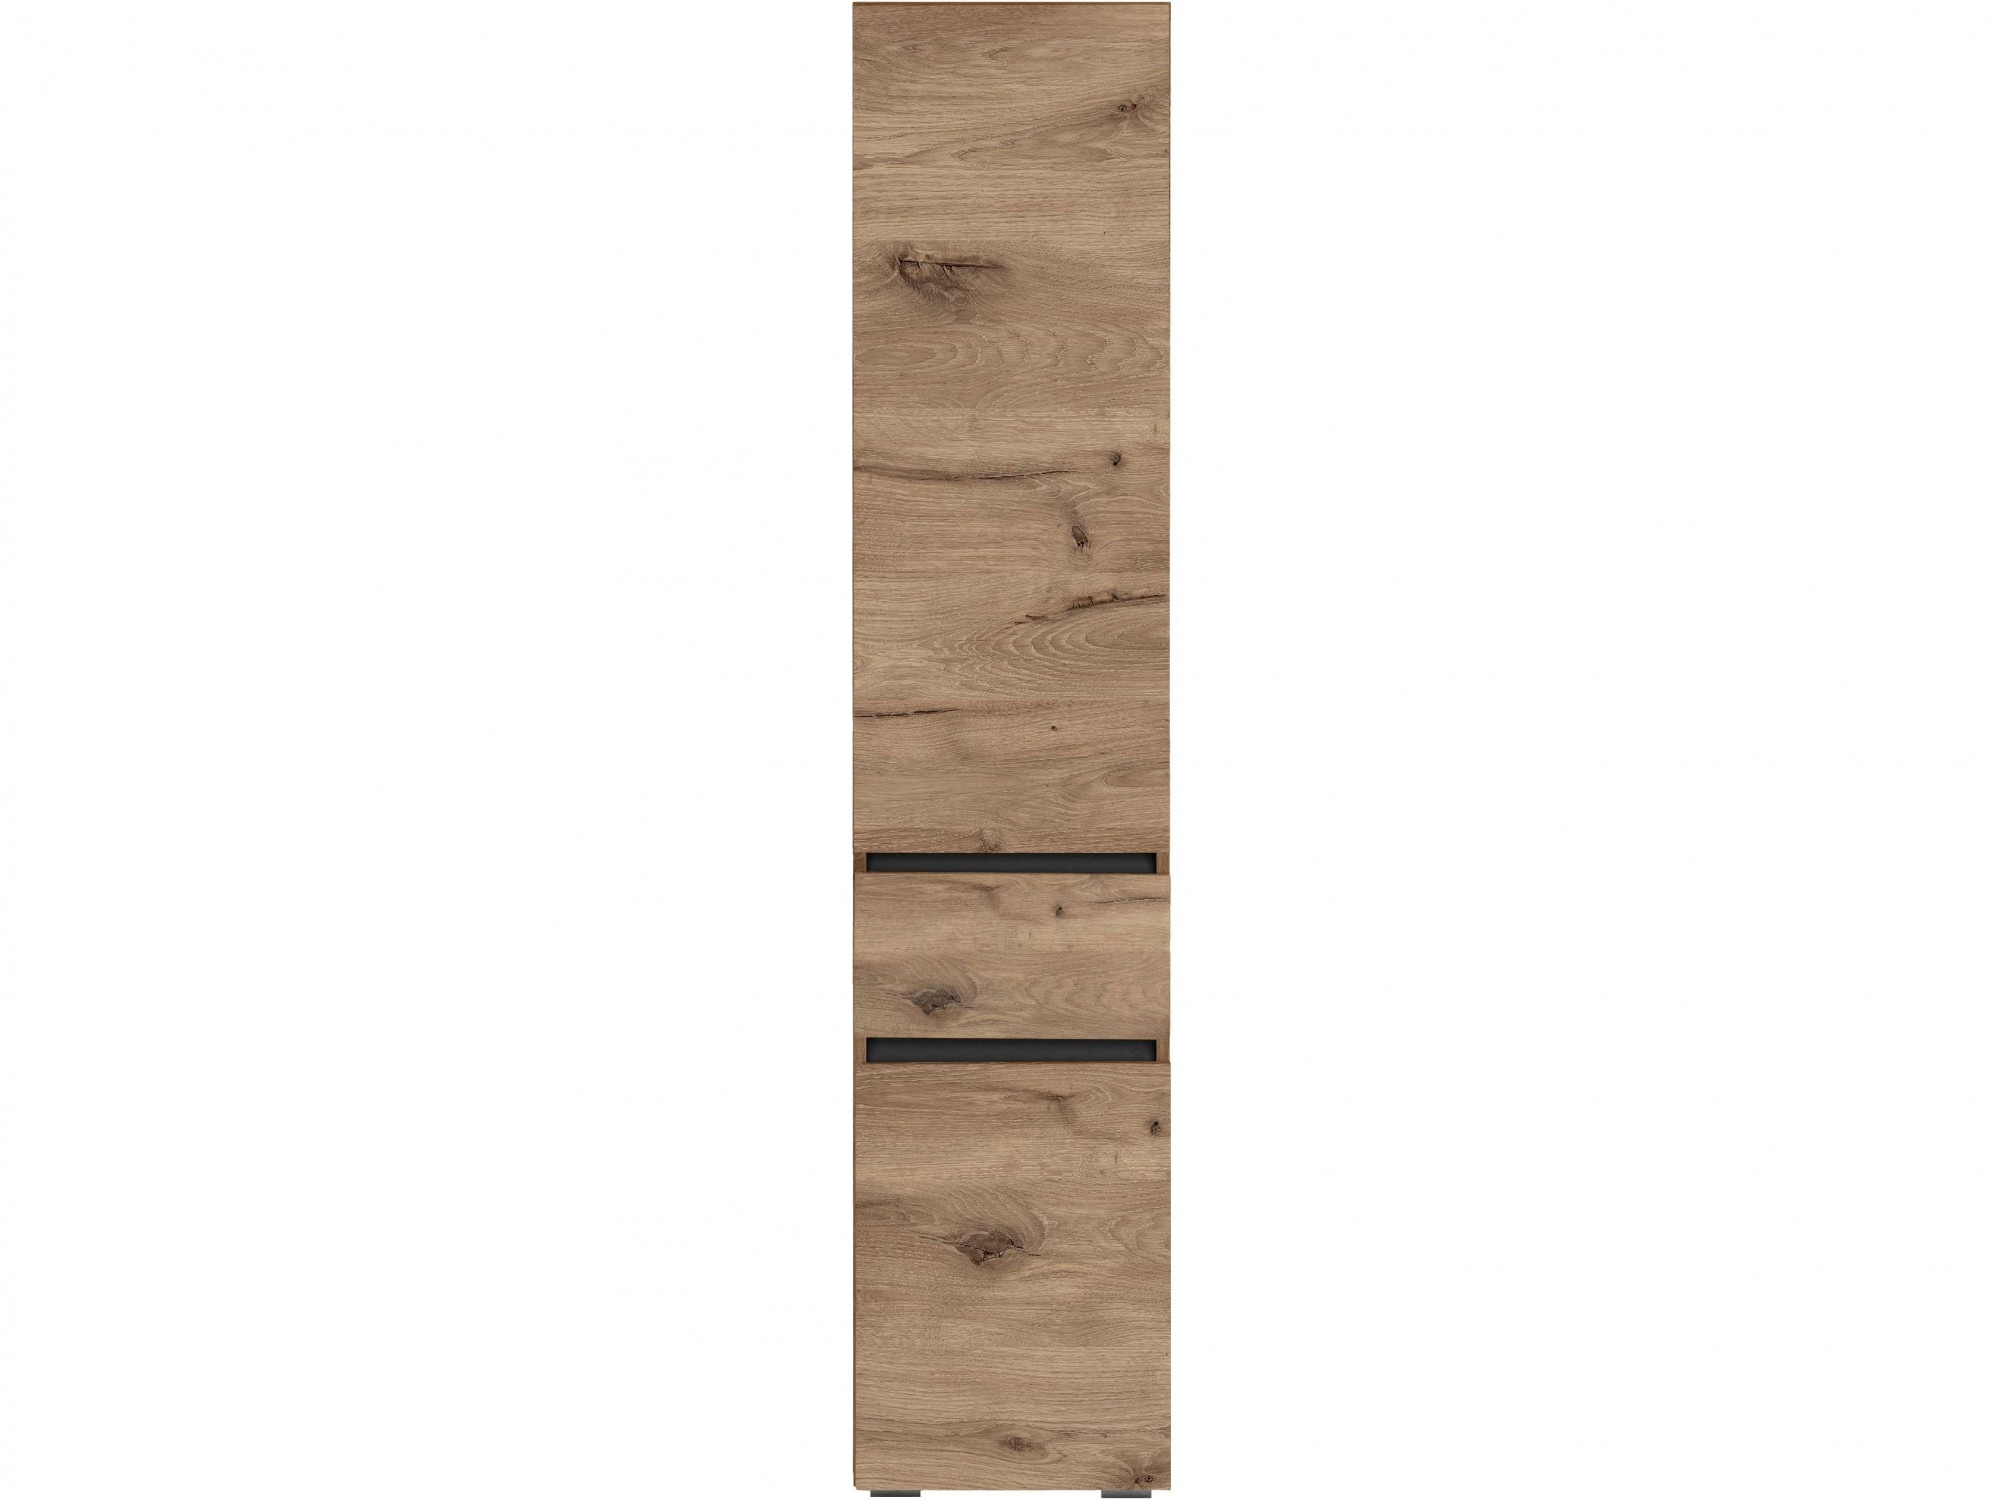 Hochschrank »Wisla«, Höhe 180 cm, mit Türen & Schubkasten